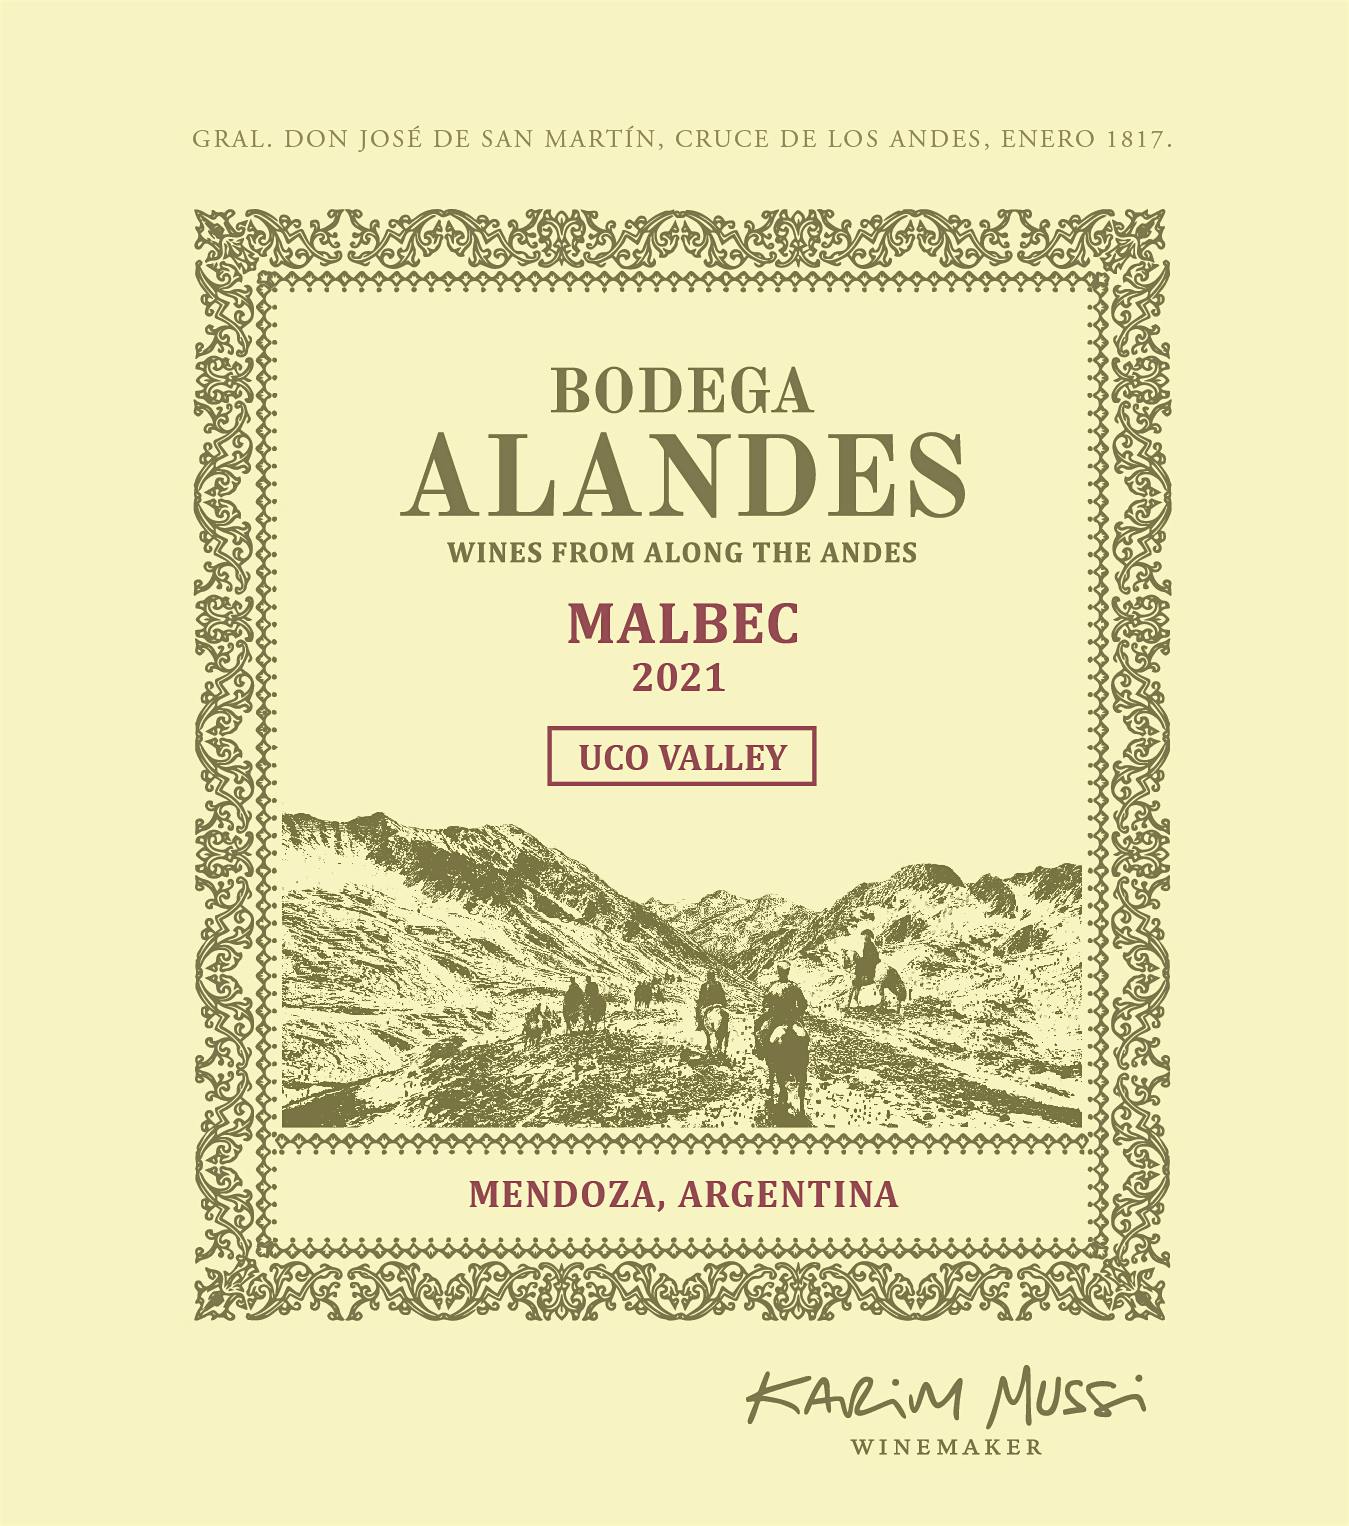 Label for Bodega Alandes